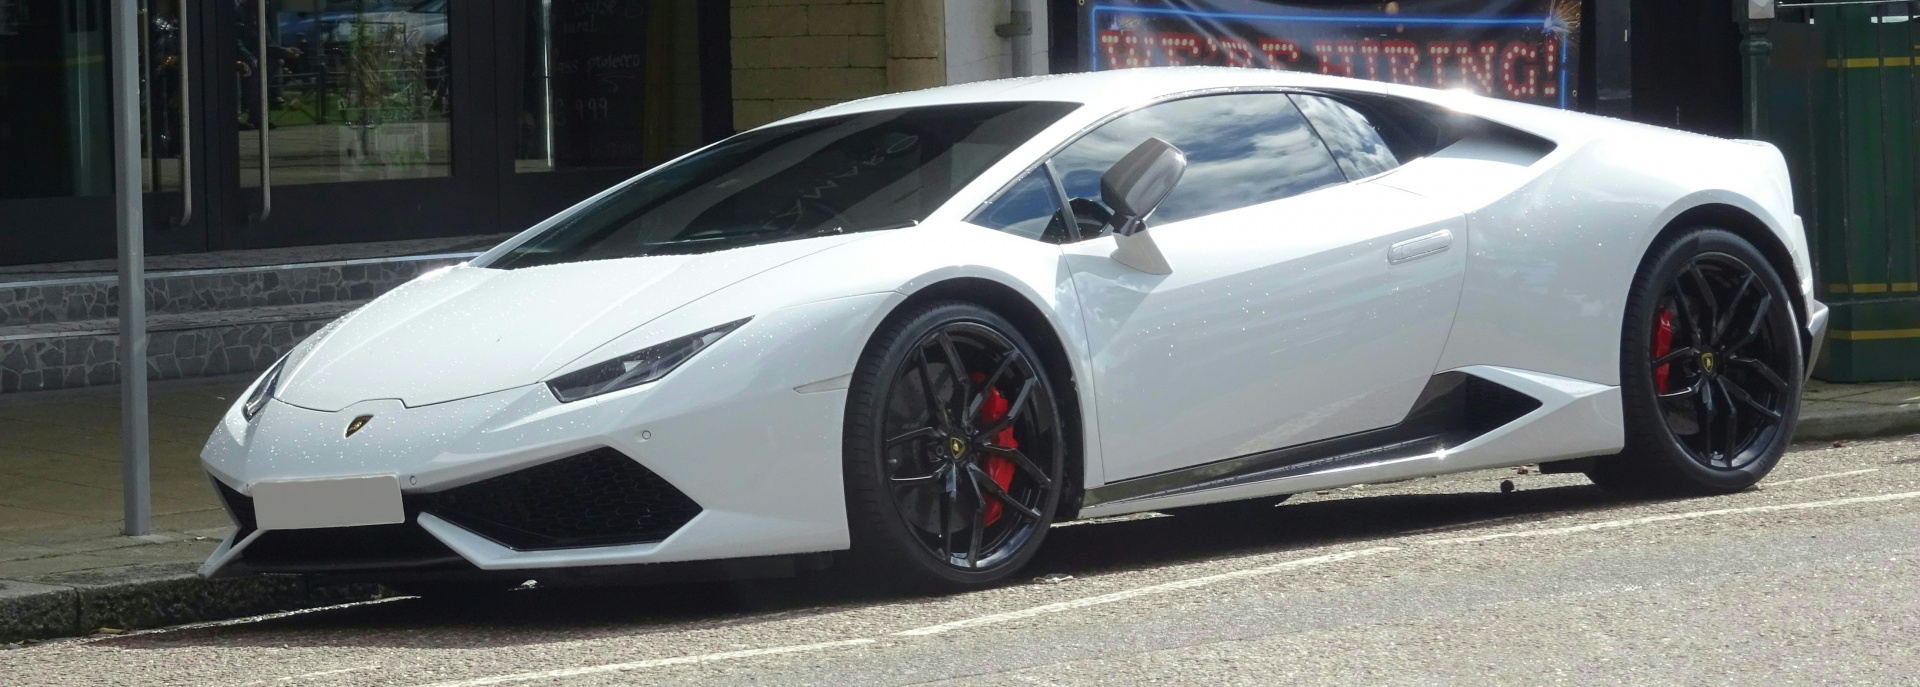 White Lamborghini Supercar